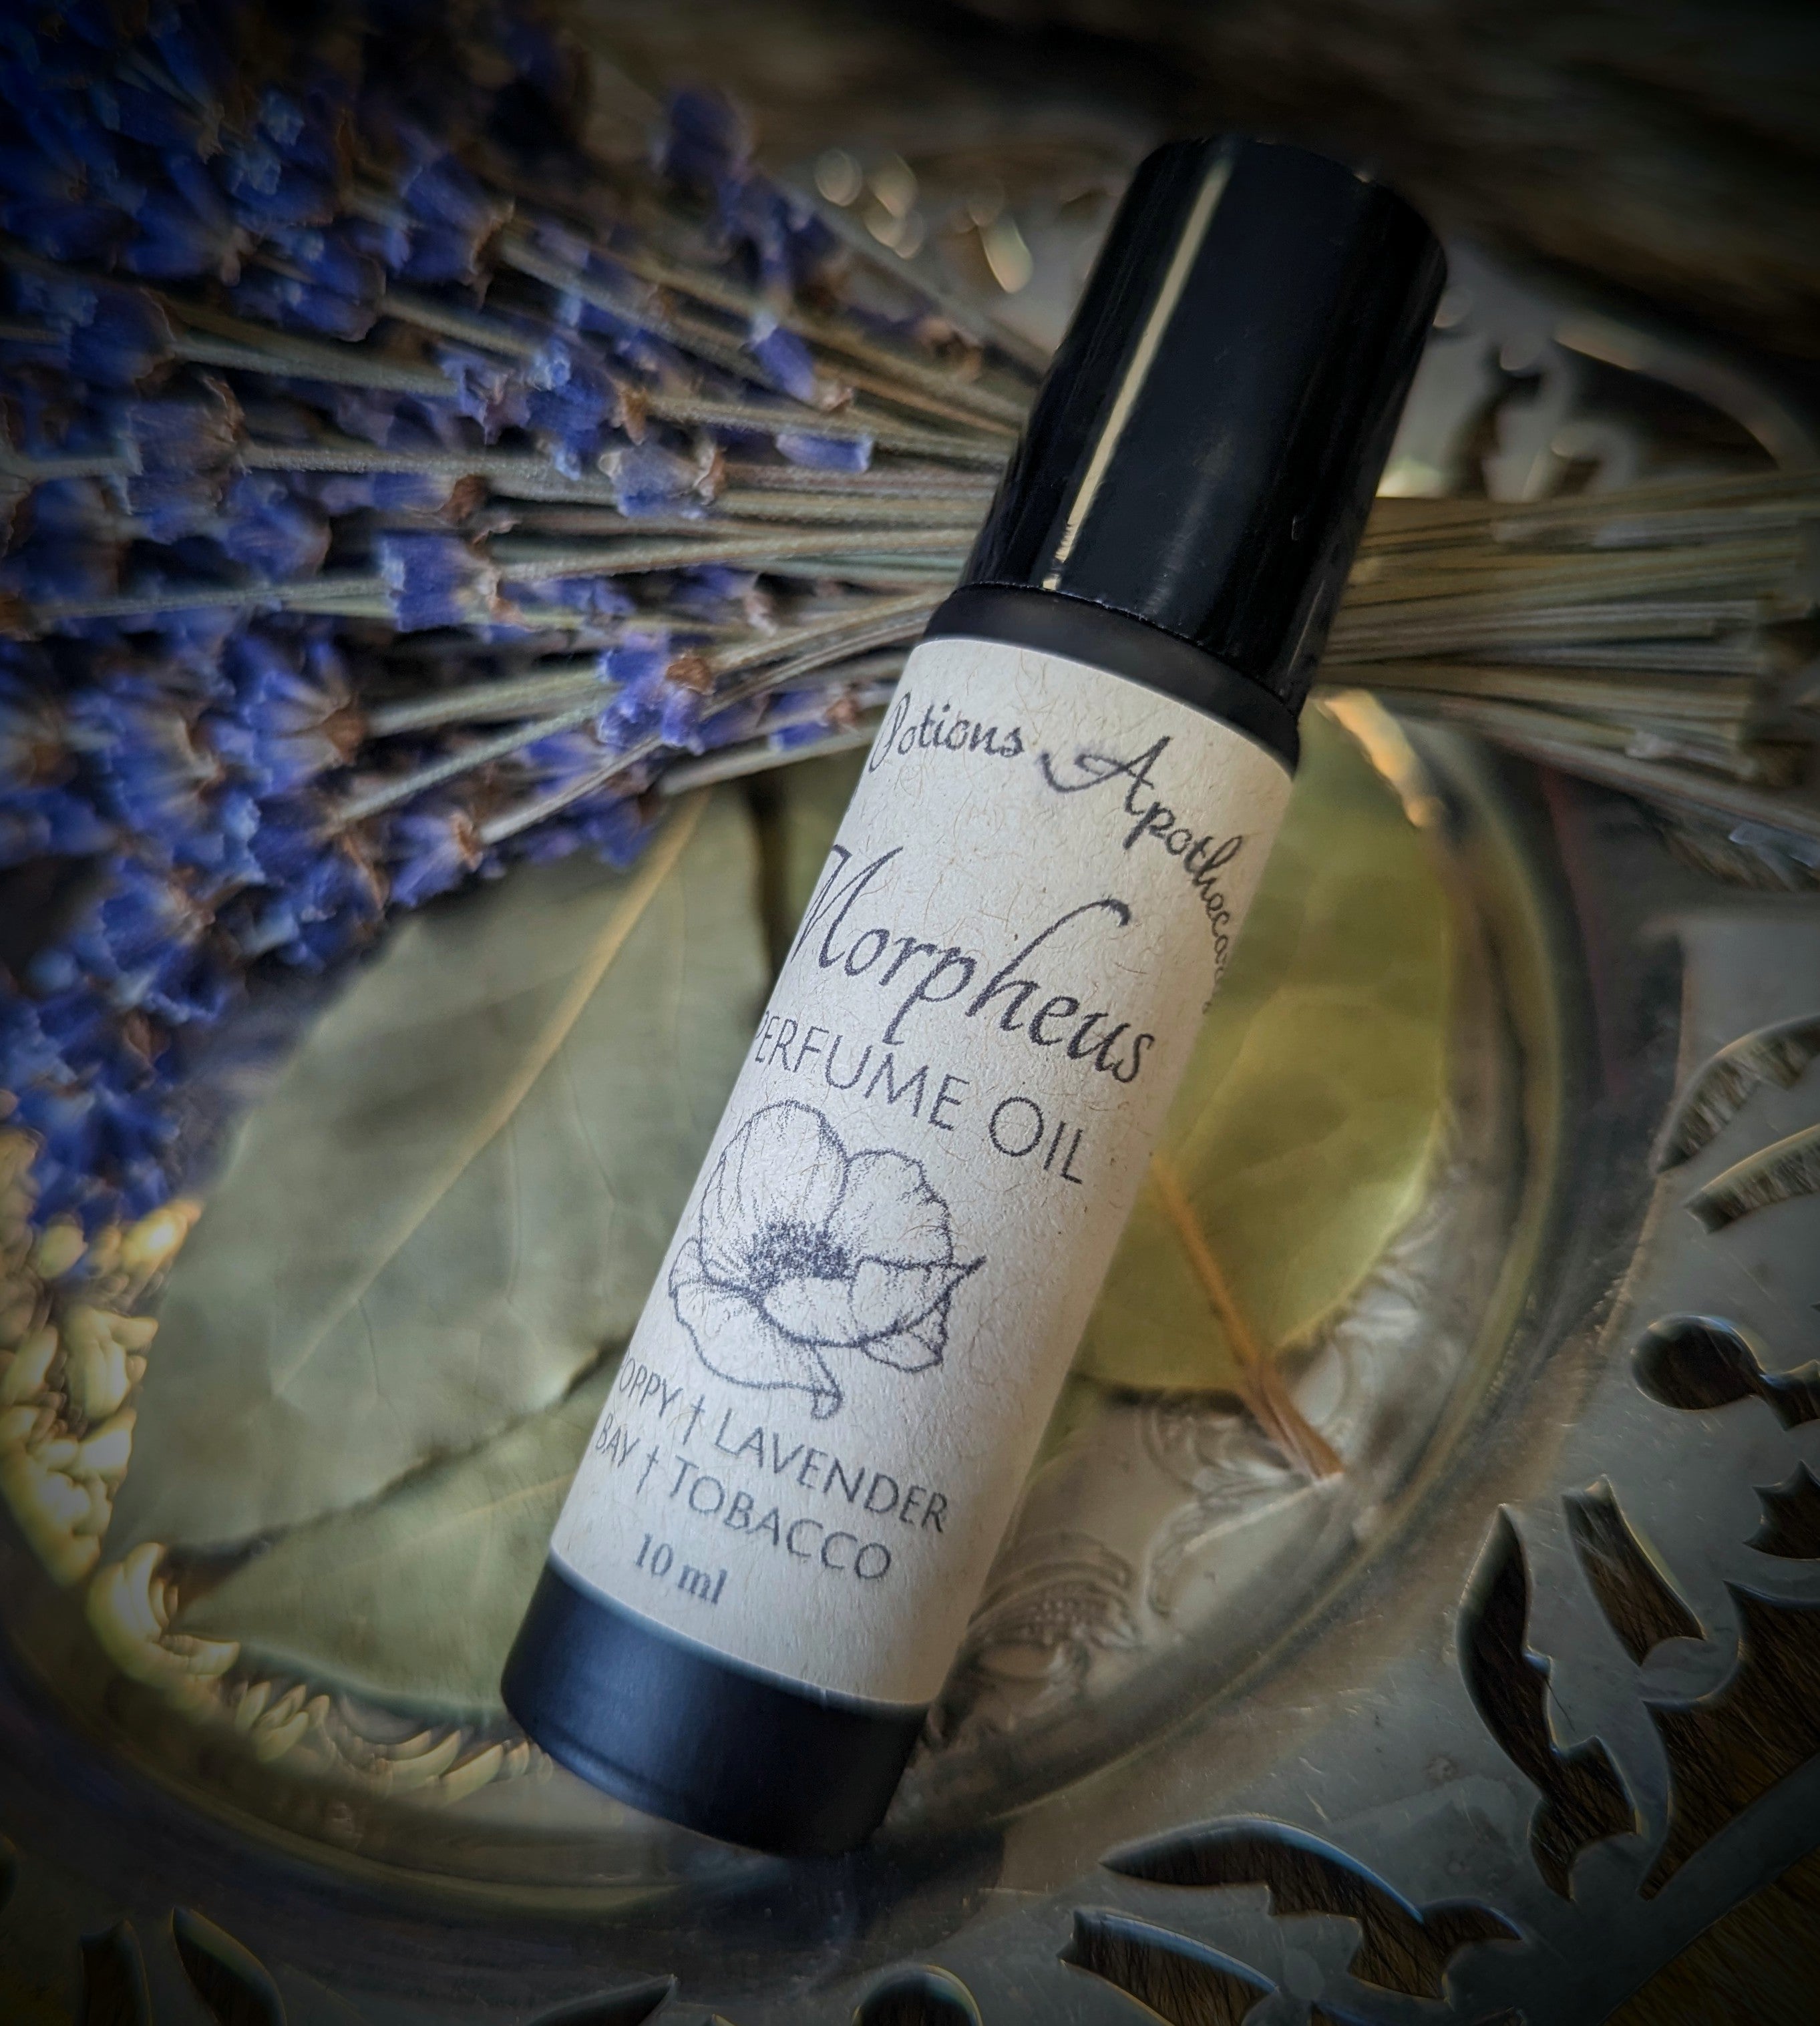 Morpheus Devotional Perfume Oil